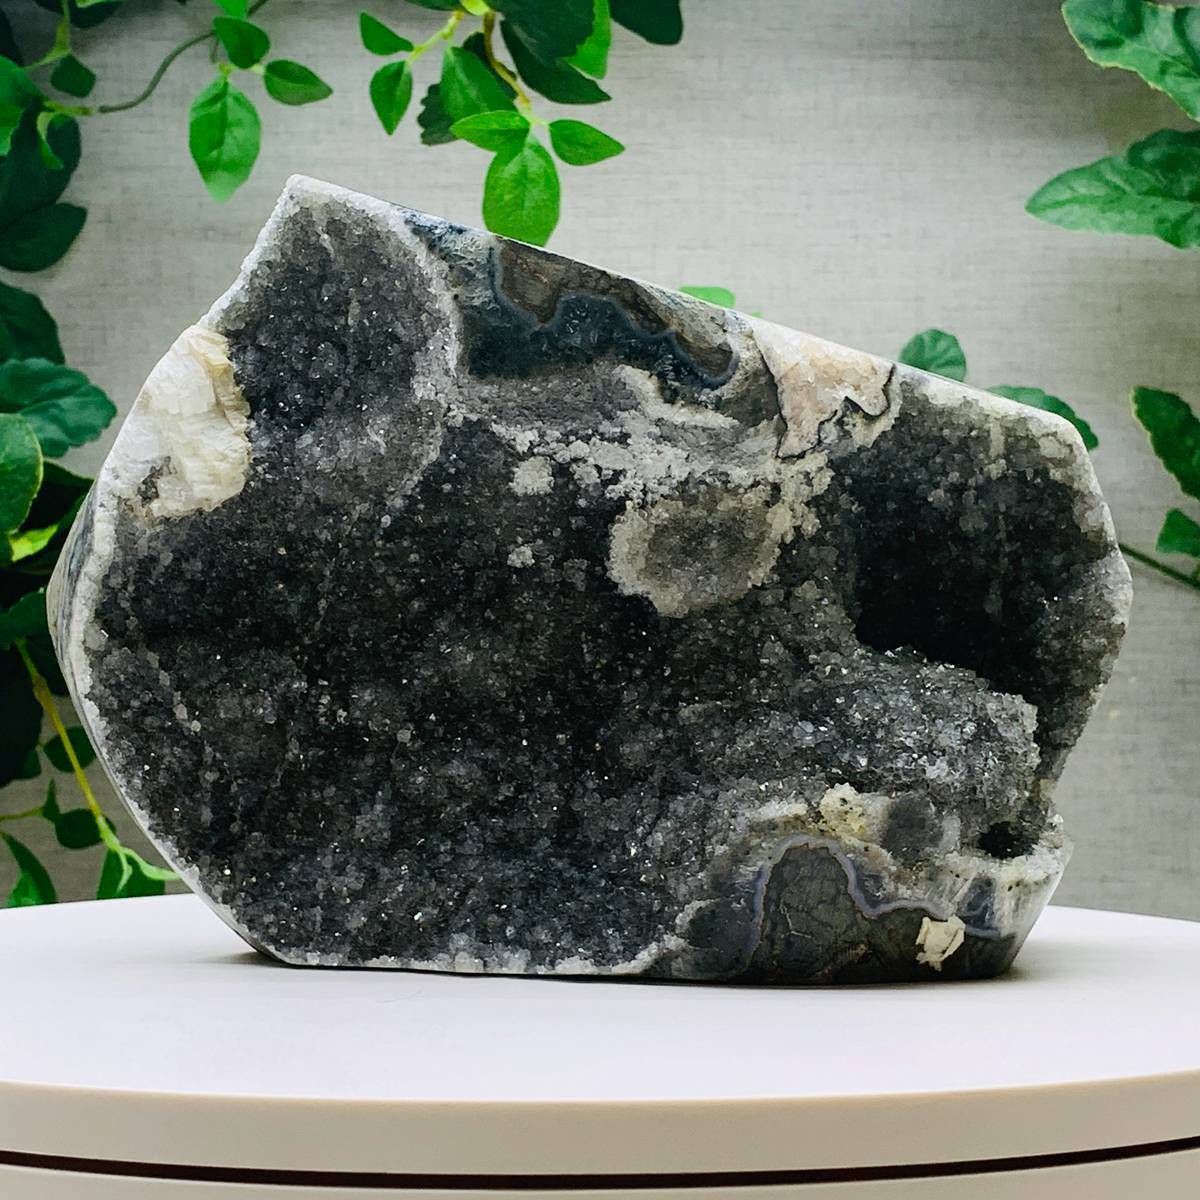 3475g Natural Amethyst Geode Mineral Specimen Crystal Quartz Energy Decoration